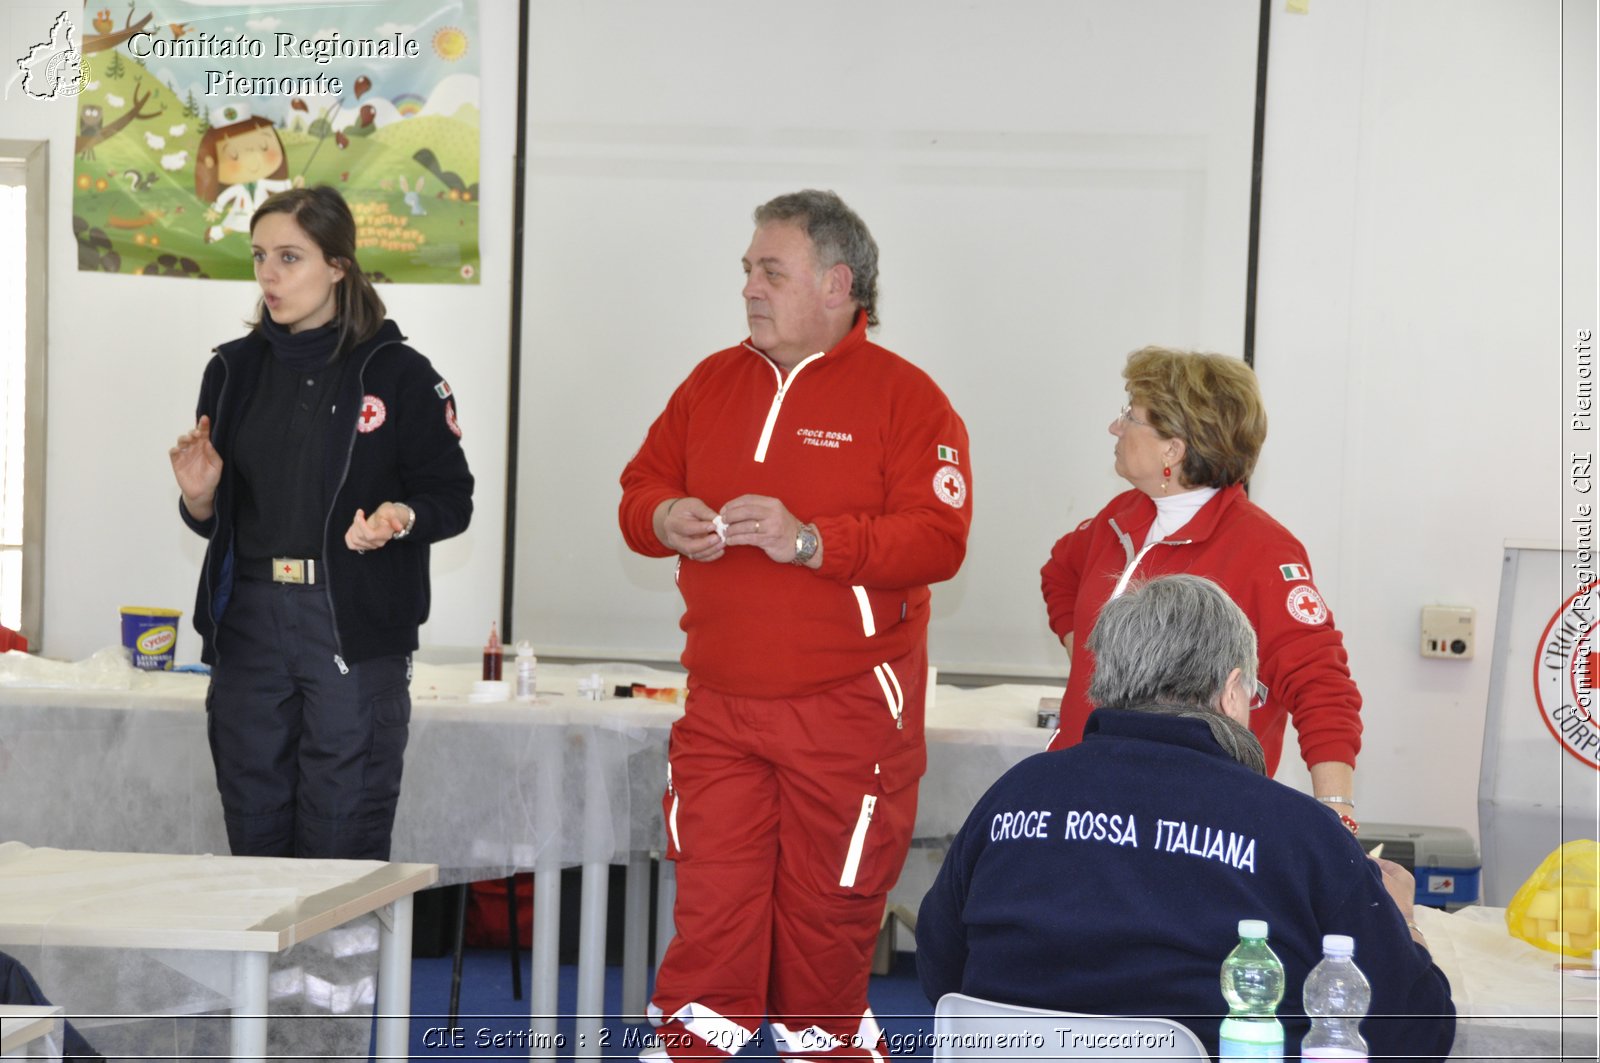 CIE Settimo : 2 Marzo 2014 - Corso Aggiornamento Truccatori - Comitato Regionale del Piemonte